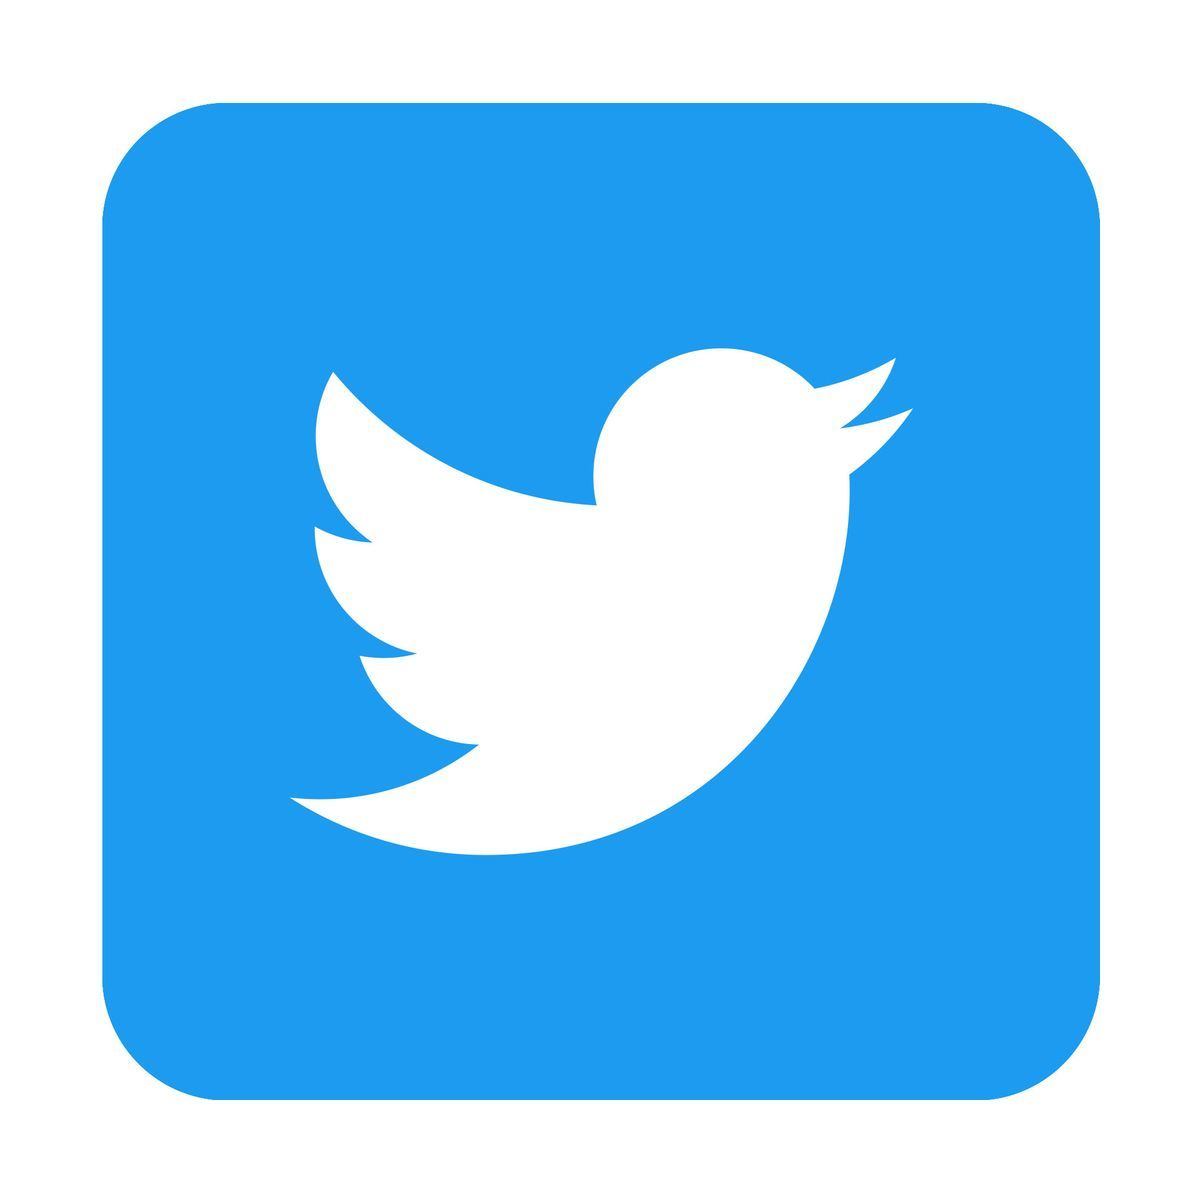 Twitterのアイコンに使える、無料素材サイト12選 - 著作権クレジット不要 | マイナビニュース